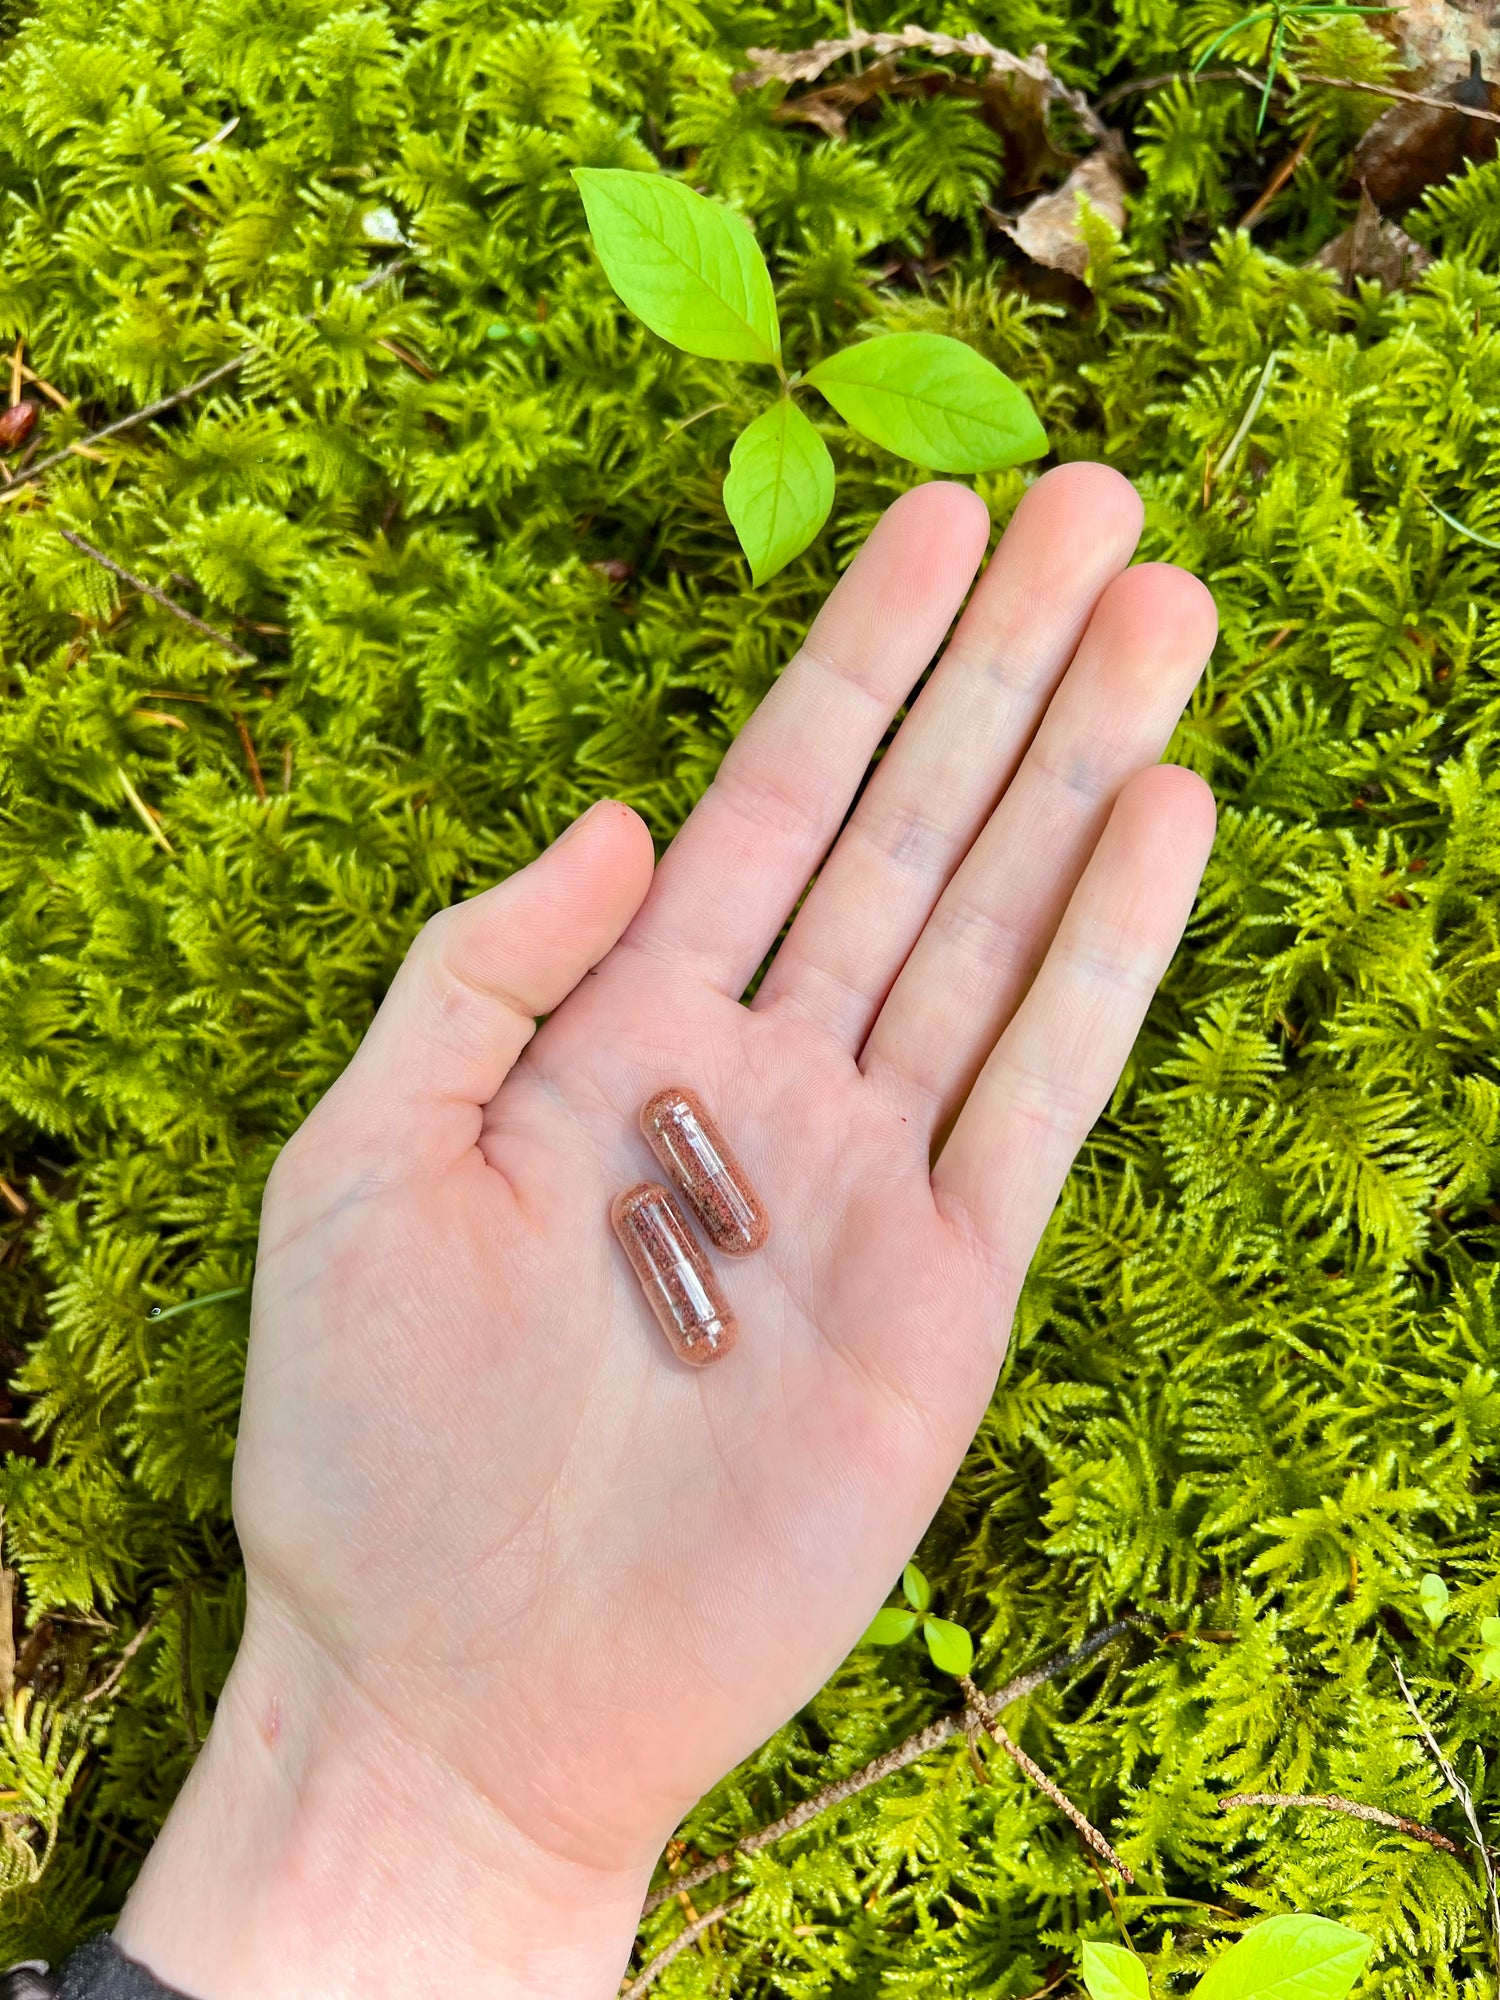 Amanita muscaria microdoses capsules